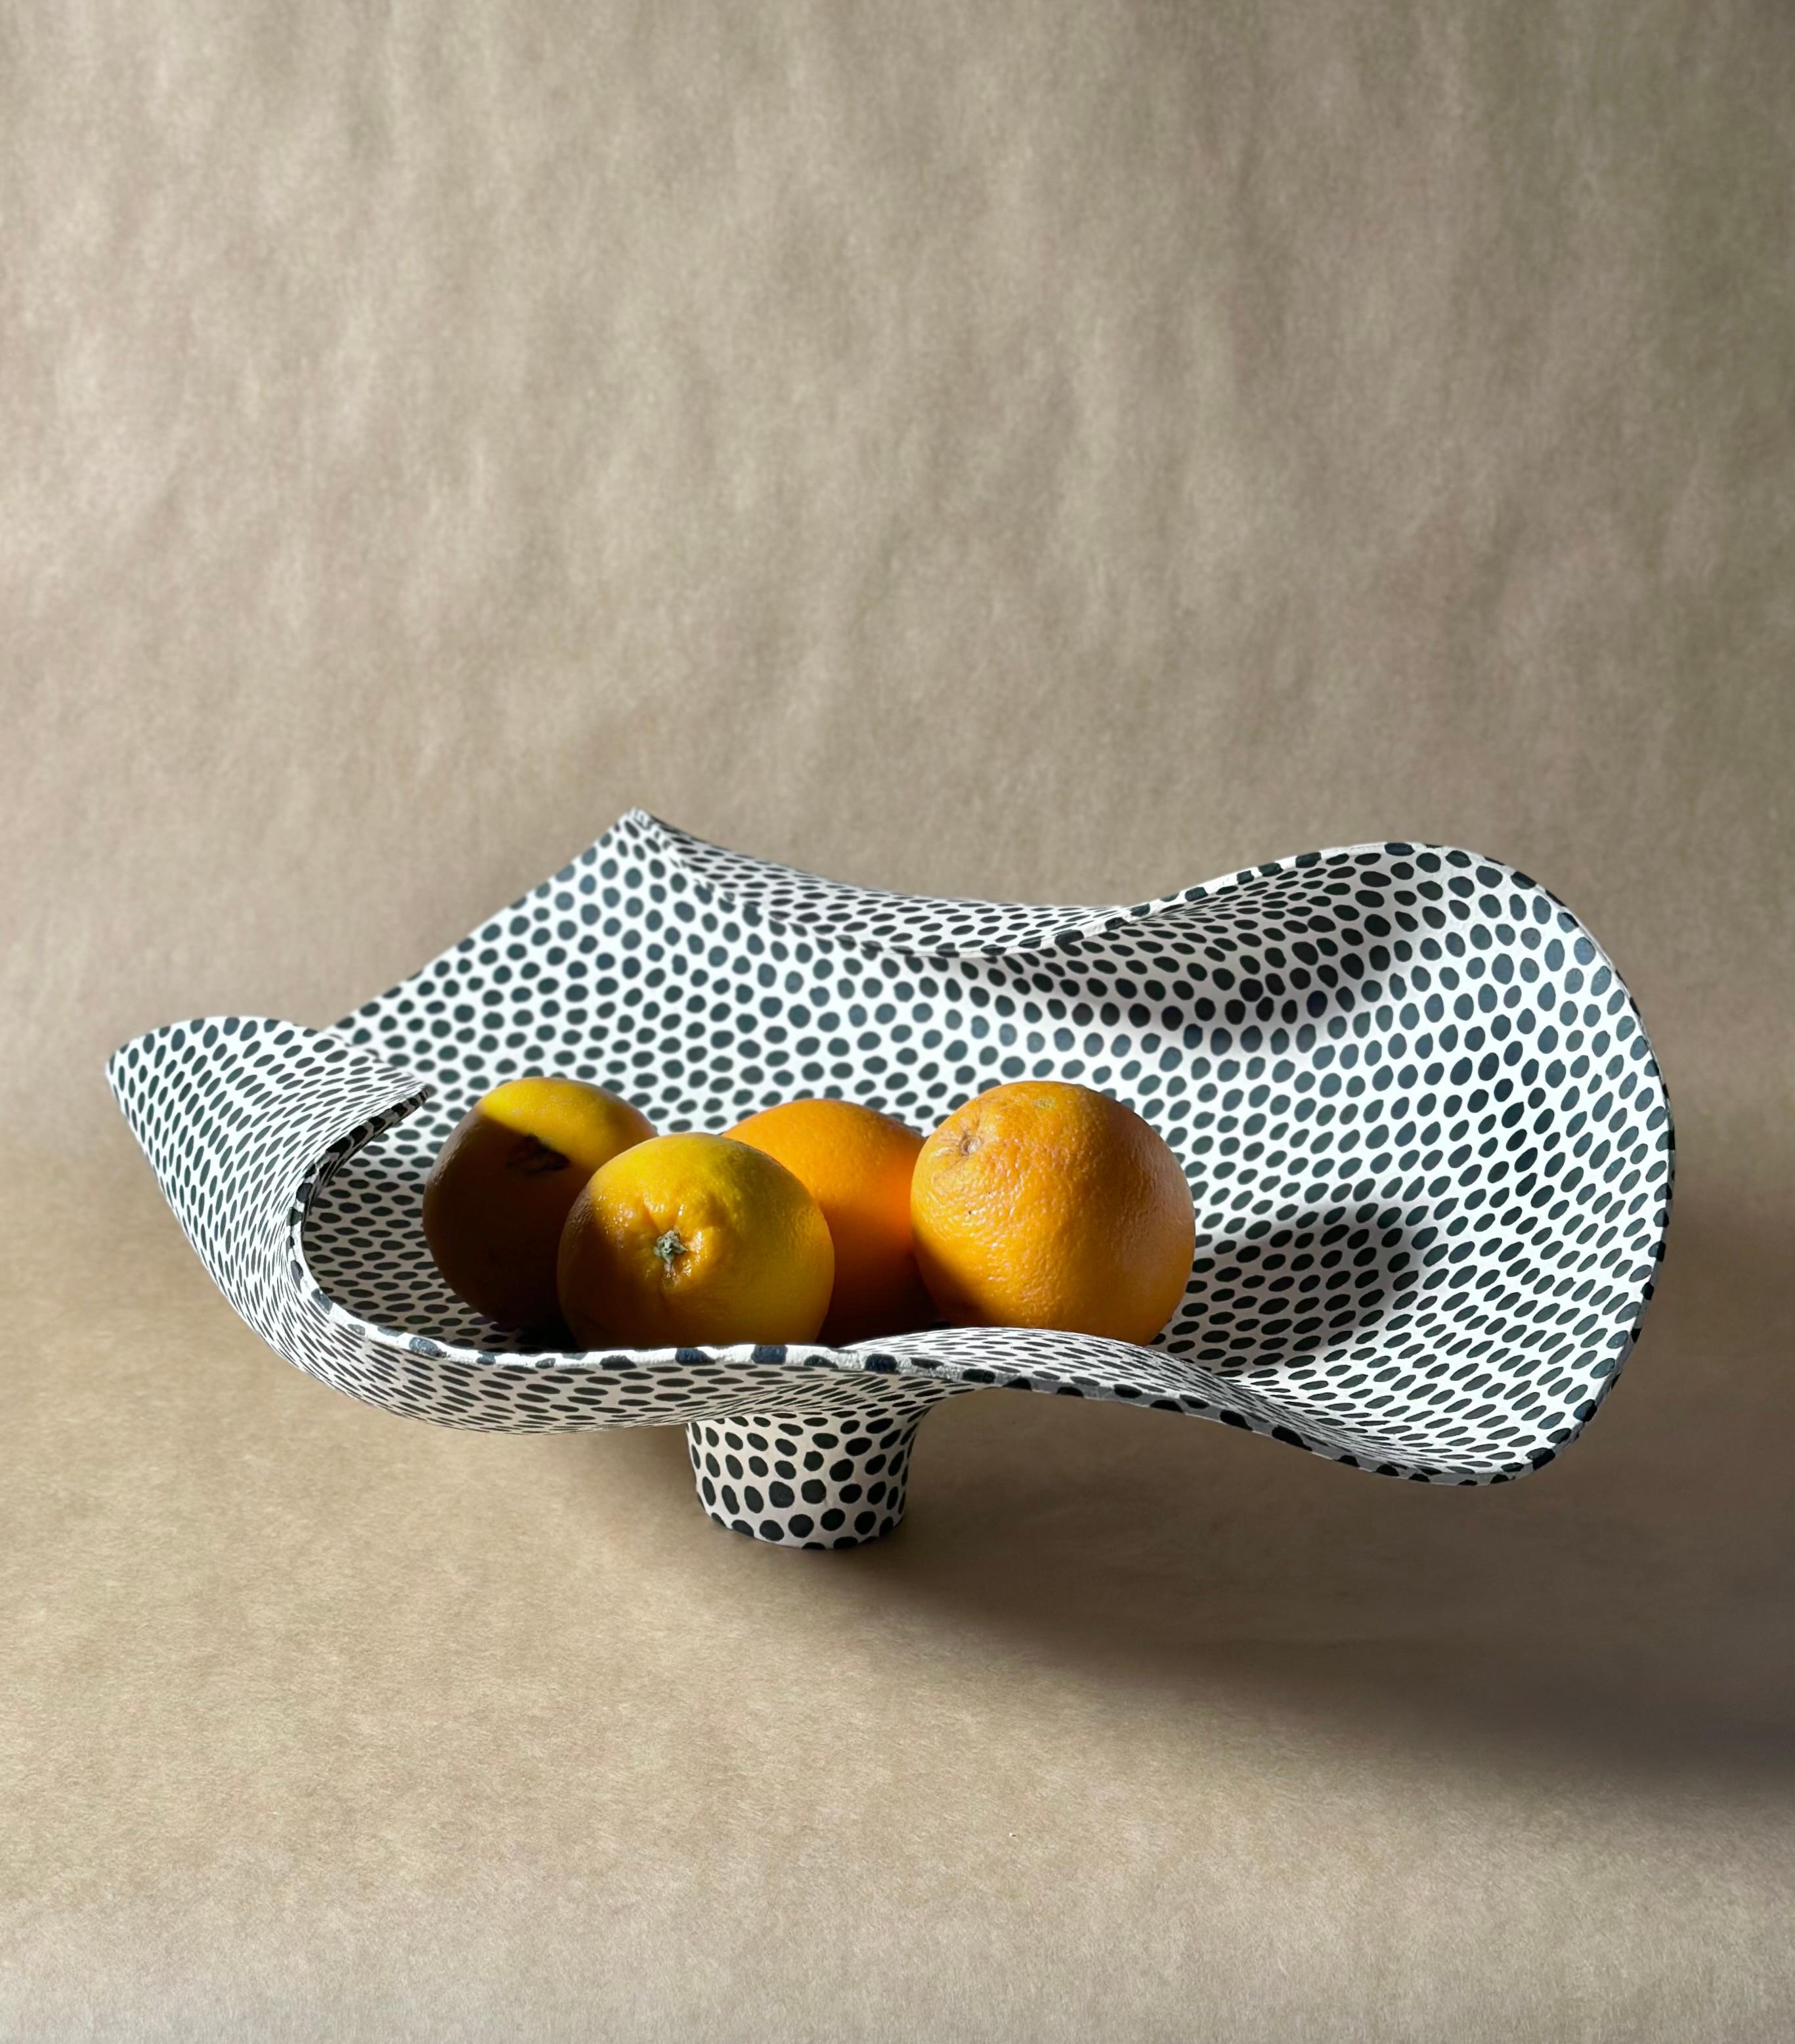 Kunstwerk von  Die norwegische Keramikkünstlerin Johanne Birkeland. Birkeland arbeitet unter dem Künstlernamen Jossolini. 

Alle ihre Stücke sind Unikate, die von Hand gefertigt oder gedreht werden. Die Dekoration wird ebenfalls von Hand gefertigt,